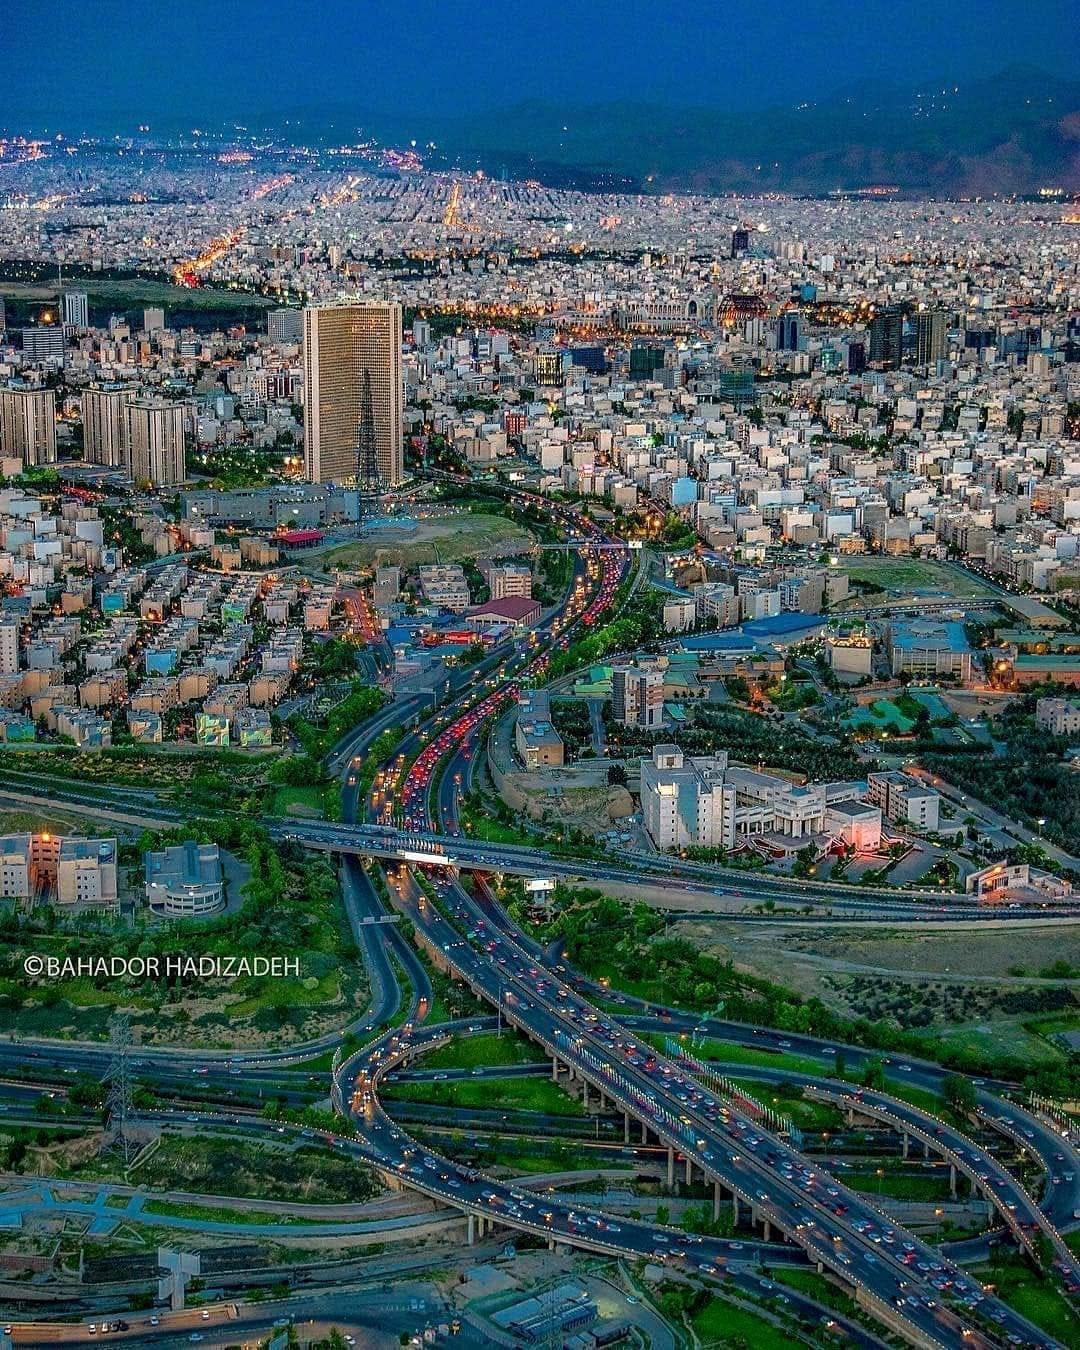 نمایی هوایی از شهر تهران + عکس